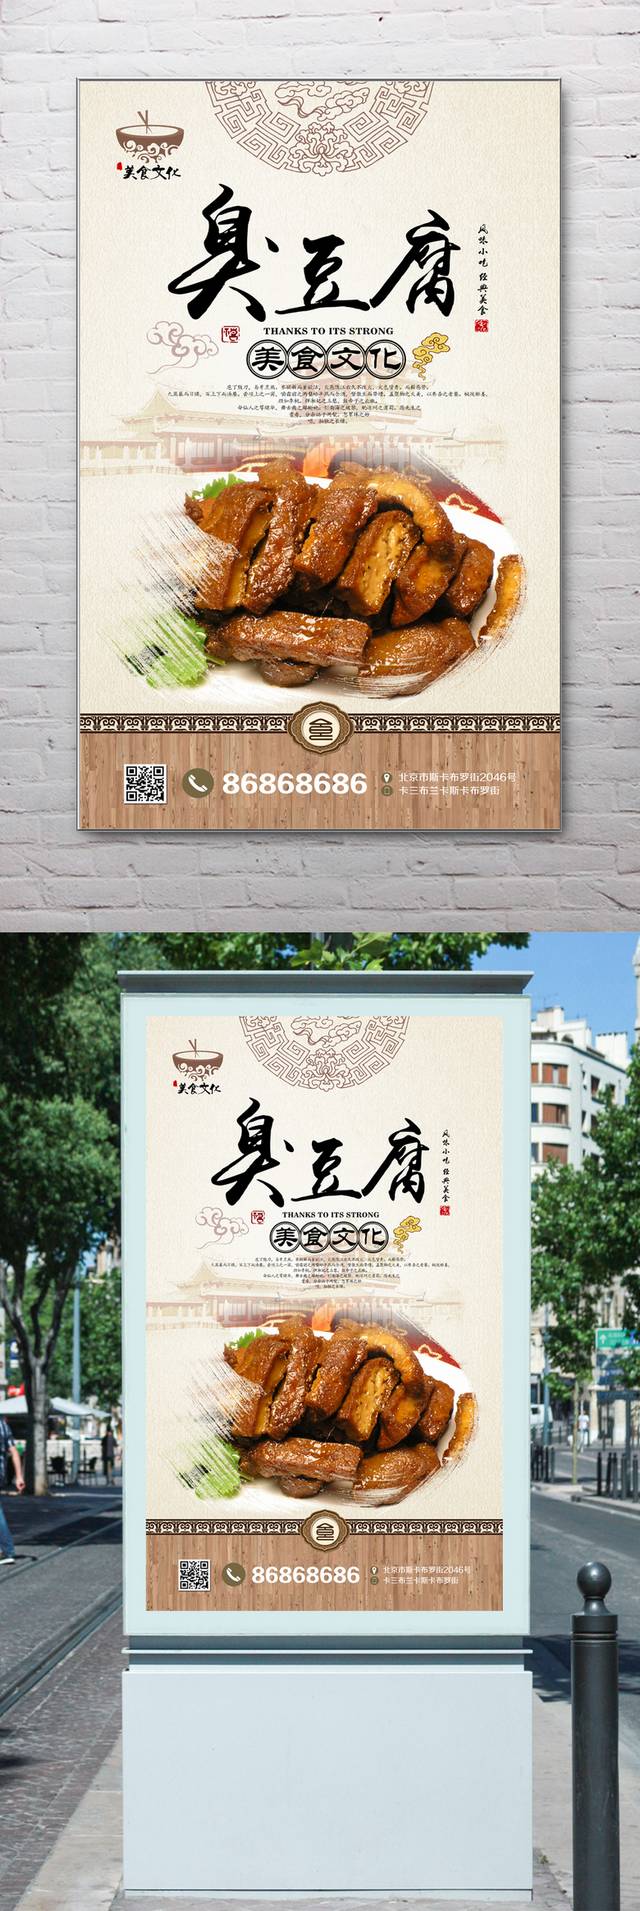 中式臭豆腐宣传海报设计